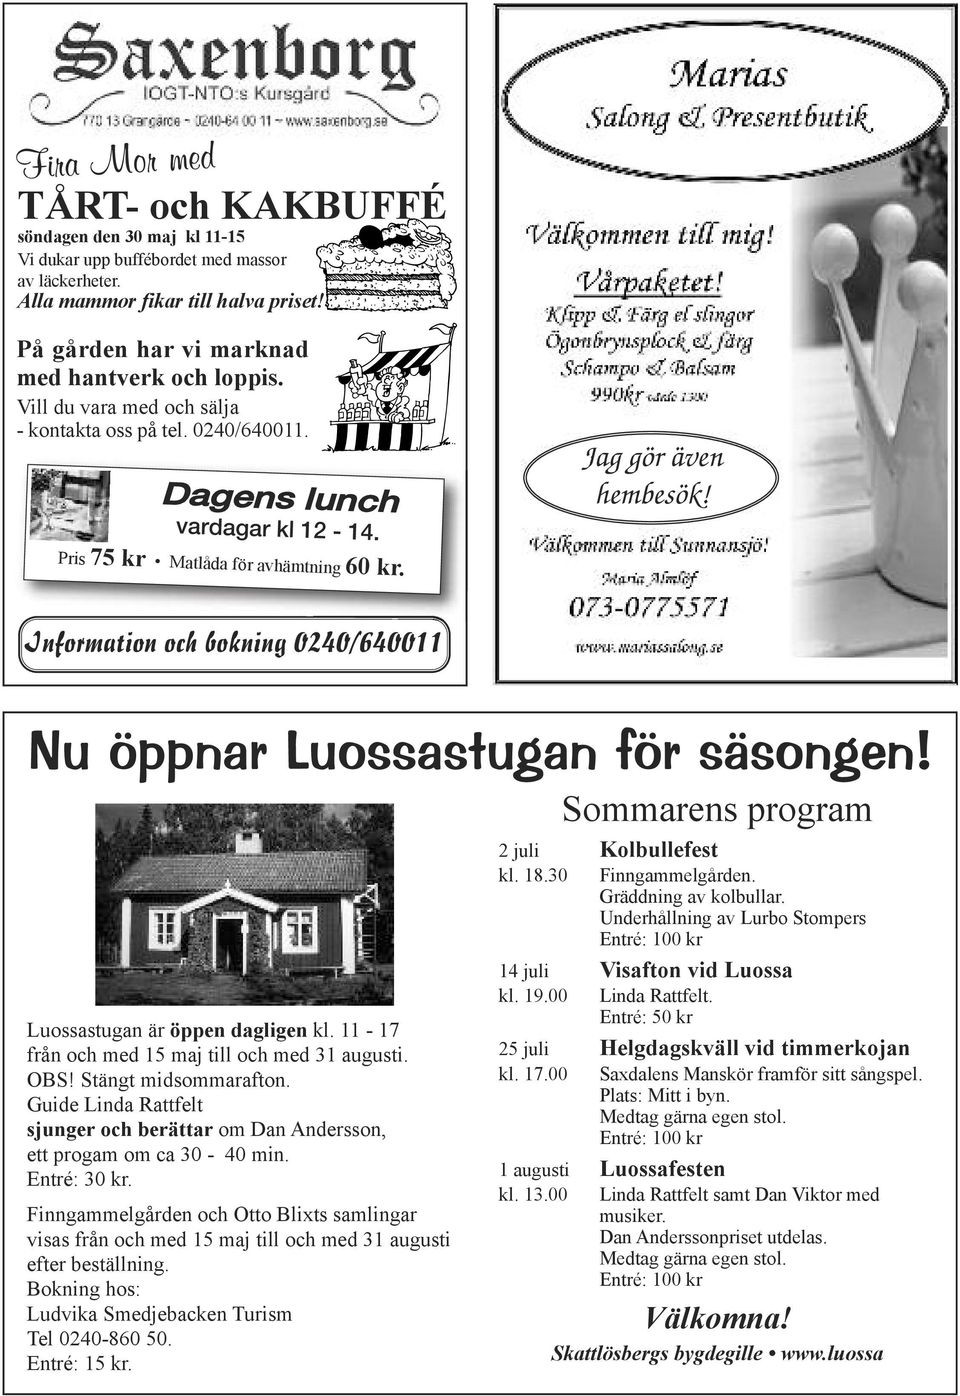 Information och bokning 0240/640011 Nu öppnar Luossastugan för säsongen! Luossastugan är öppen dagligen kl. 11-17 från och med 15 maj till och med 31 augusti. OBS! Stängt midsommarafton.